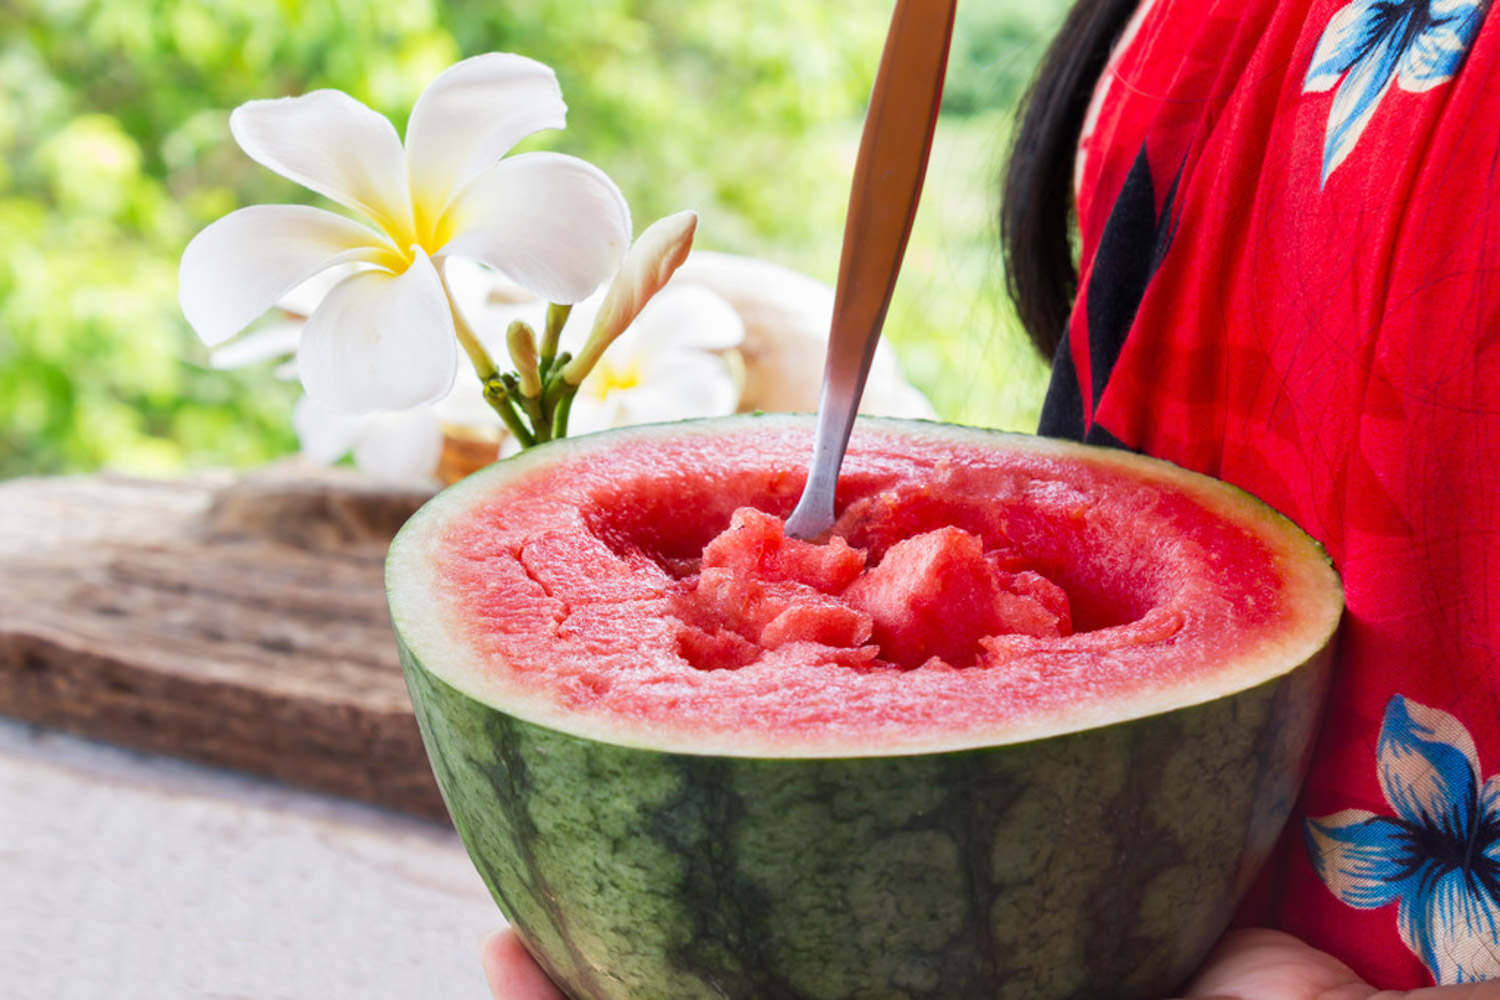 炎熱夏天裡最清涼解渴飲品！買顆西瓜回家自製3款西瓜創意飲料吧 | 蕃新聞